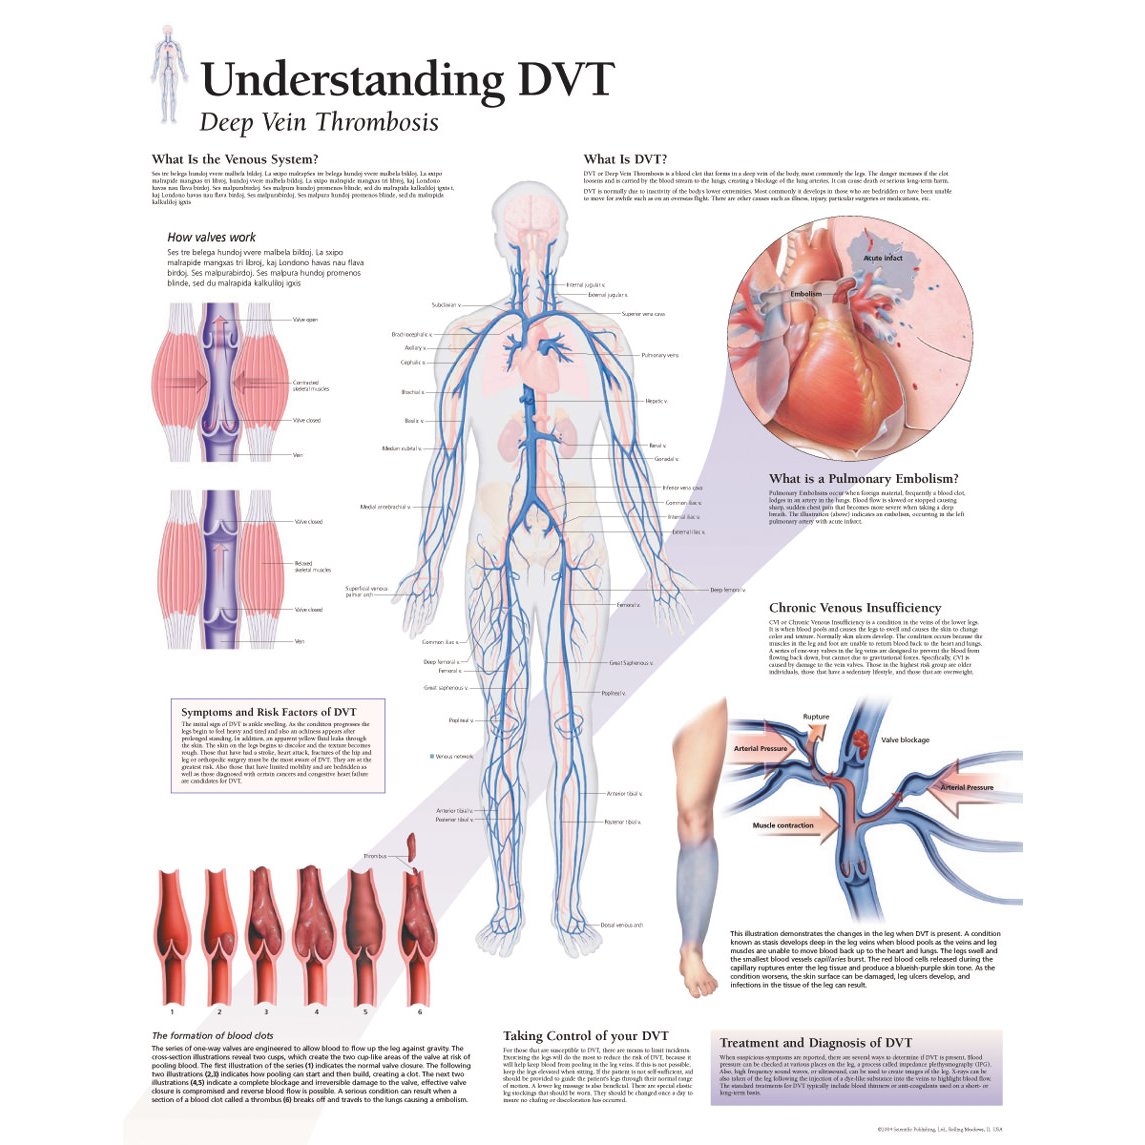 https://www.universalmedicalinc.com/media/catalog/product/cache/4bef53cd5d1d72725a98f6772b6db8dd/1/6/1652_understanding-dvt-deep-vein-thrombosis-chart.jpg